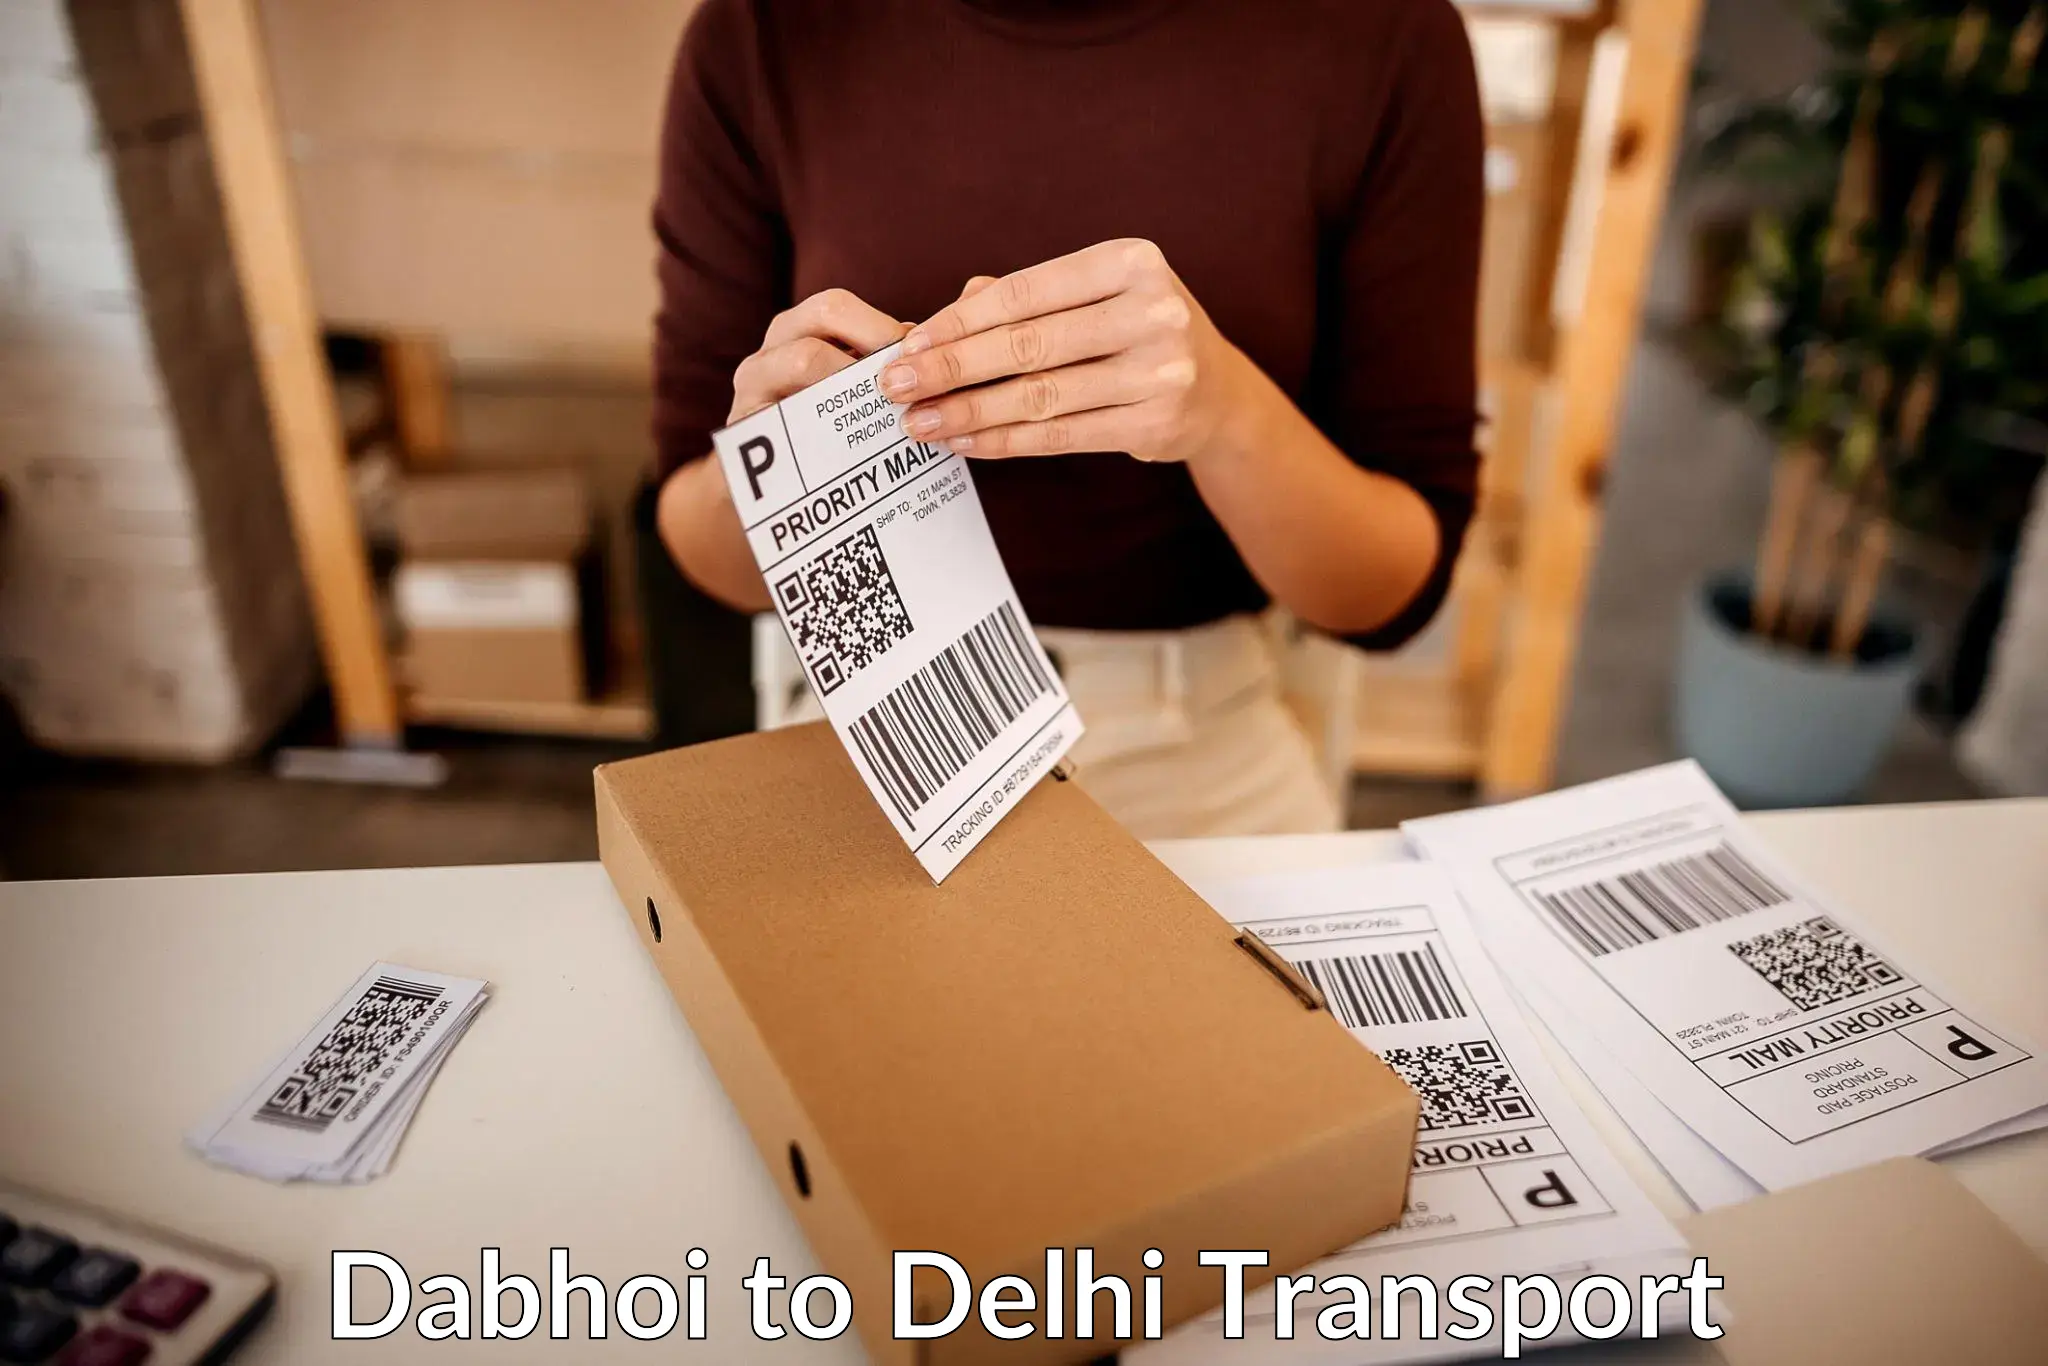 Cargo transportation services Dabhoi to Delhi